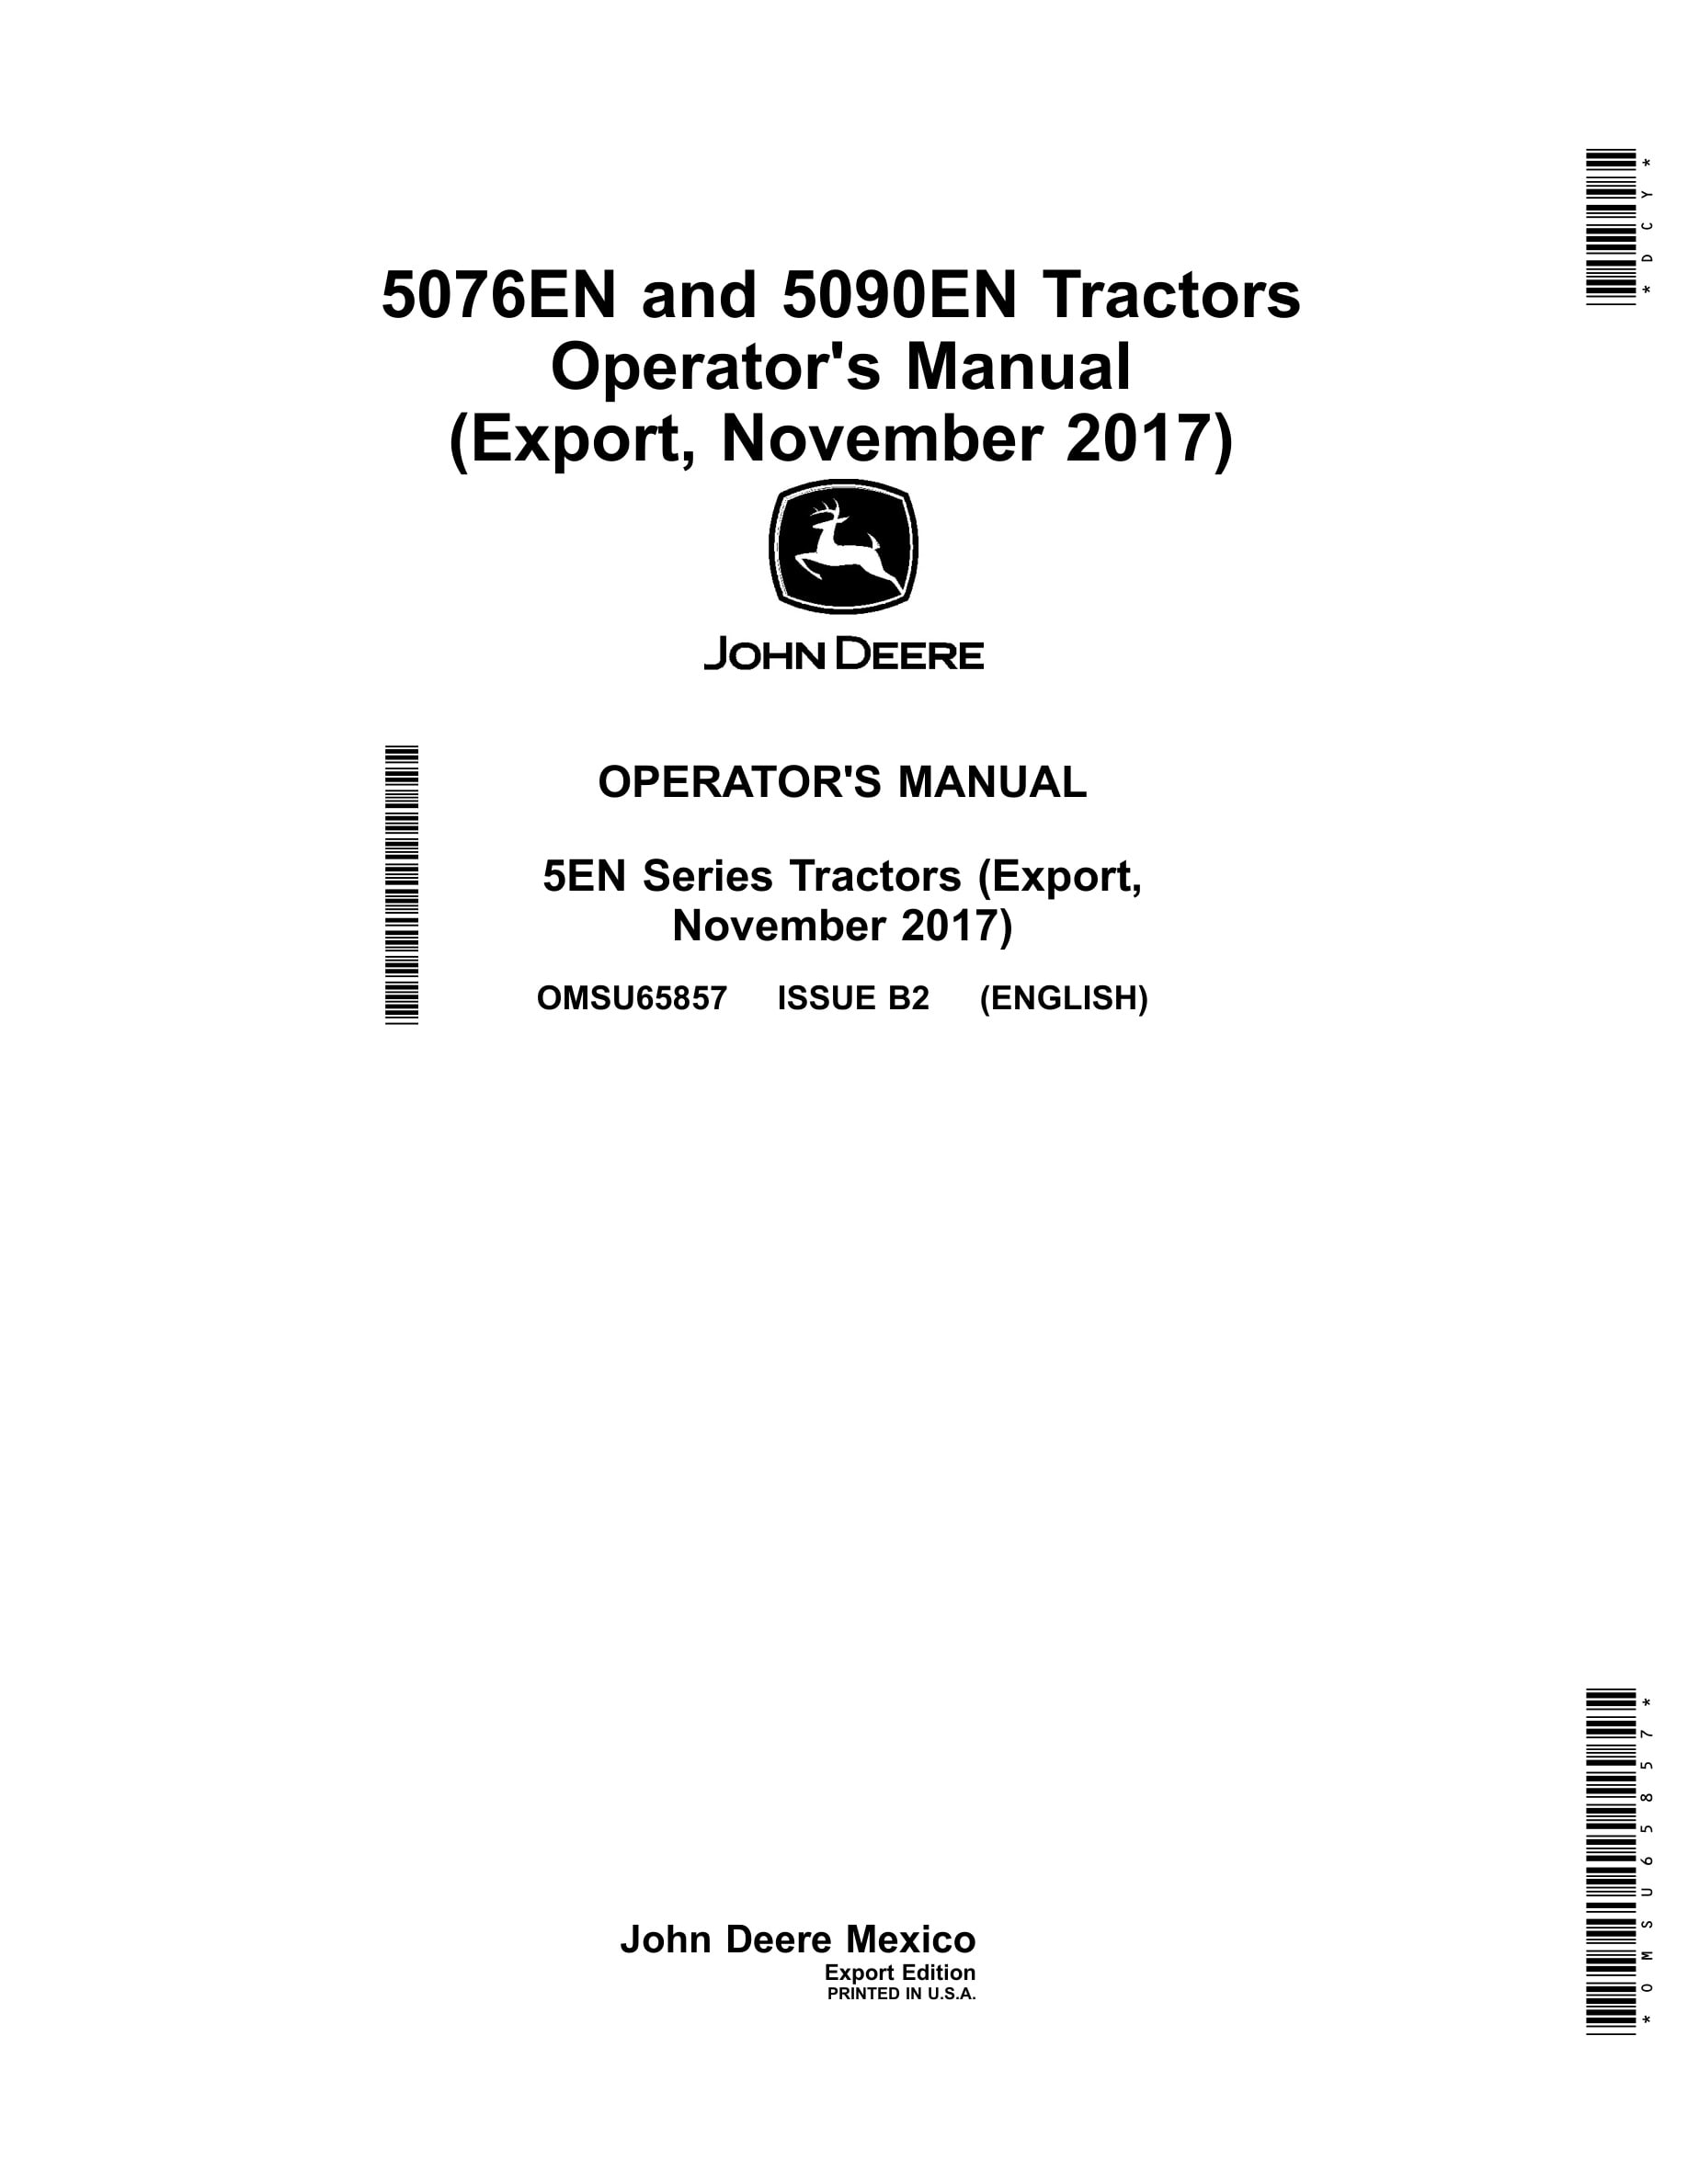 John Deere 5076en And 5090en Tractors Operator Manuals OMSU65857-1